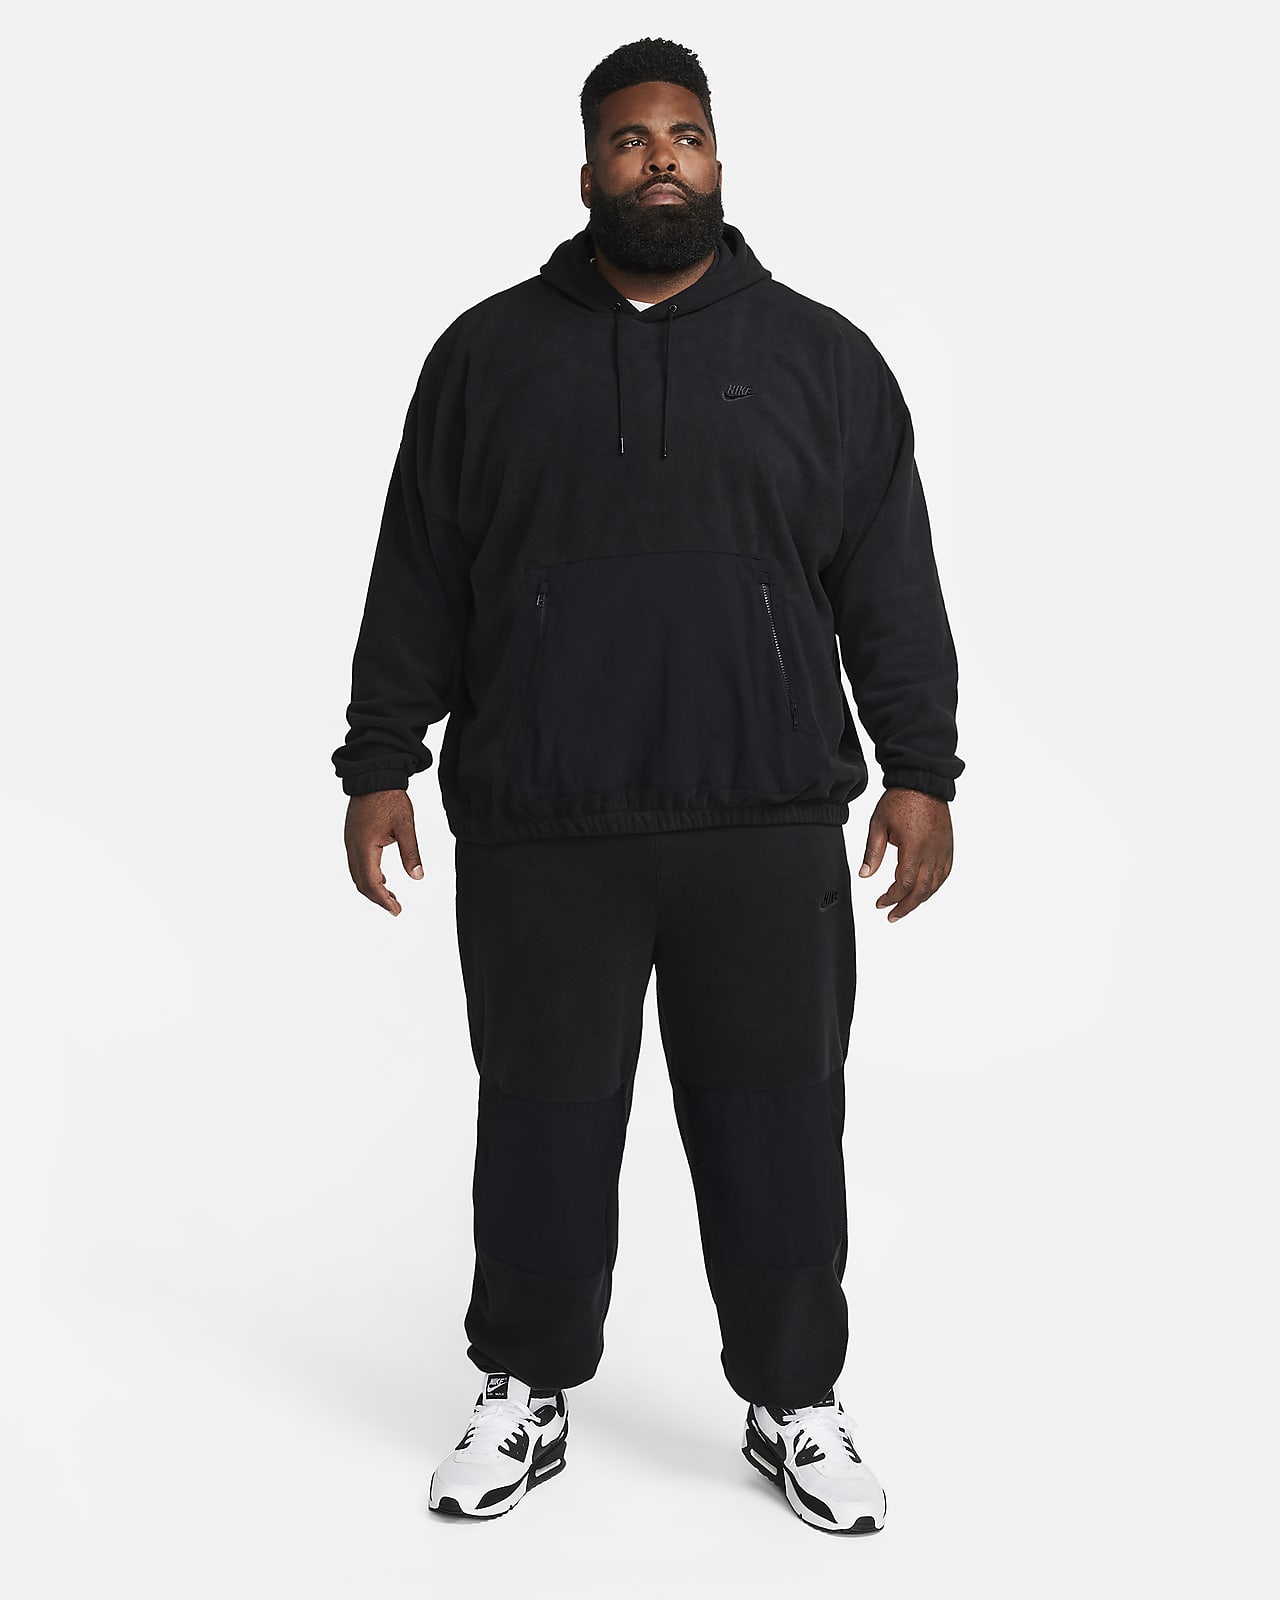 Nike Sportswear Tech Fleece Men's Pullover Hoodie